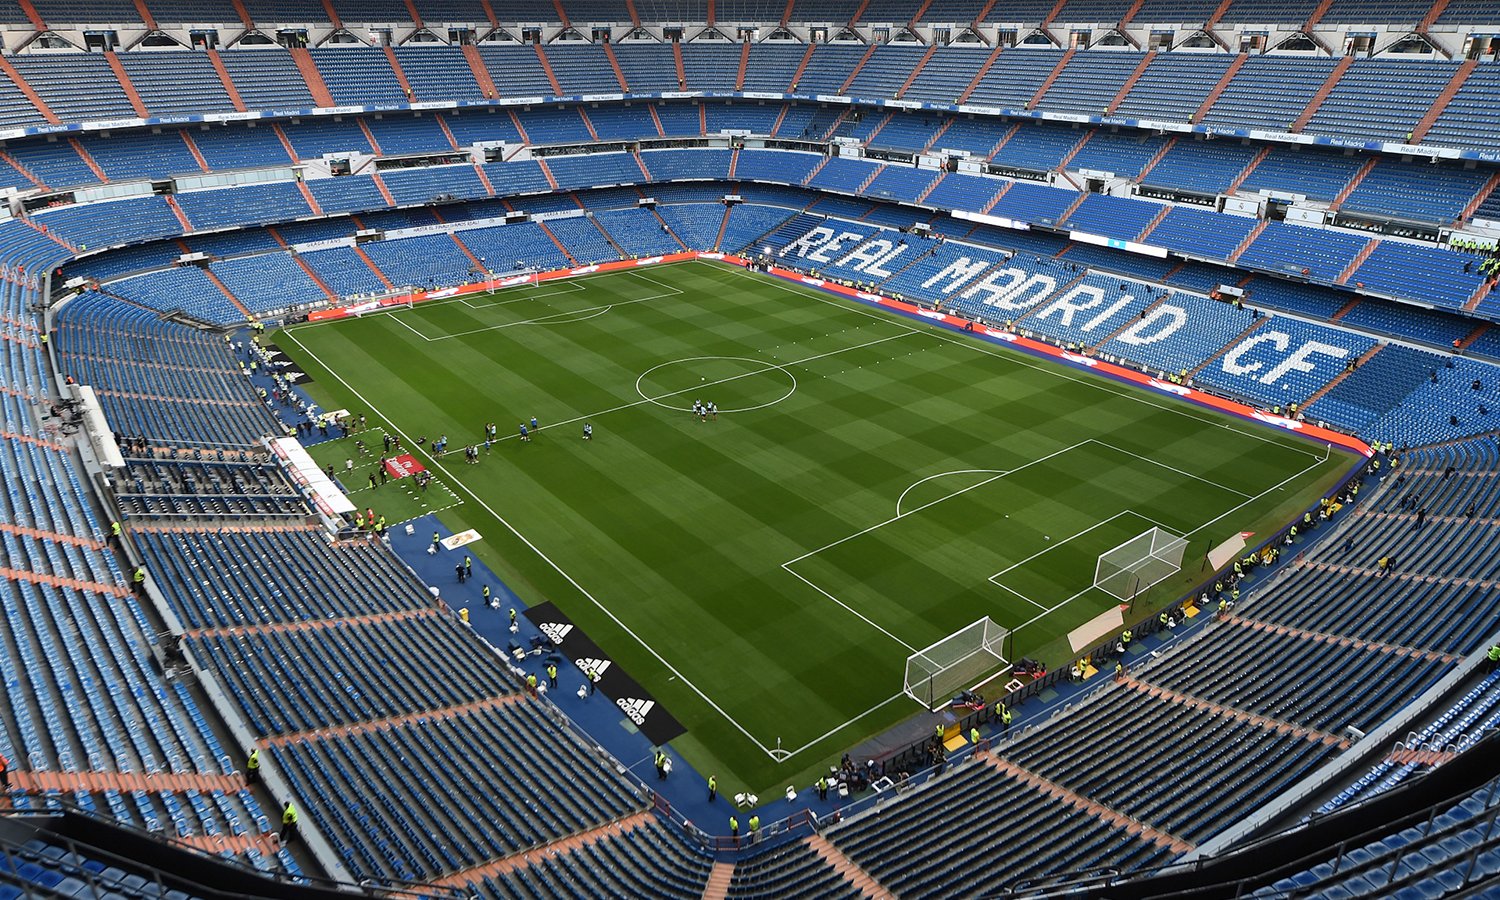 La final se jugará en el Santiago Bernabéu y con ambas hinchadas